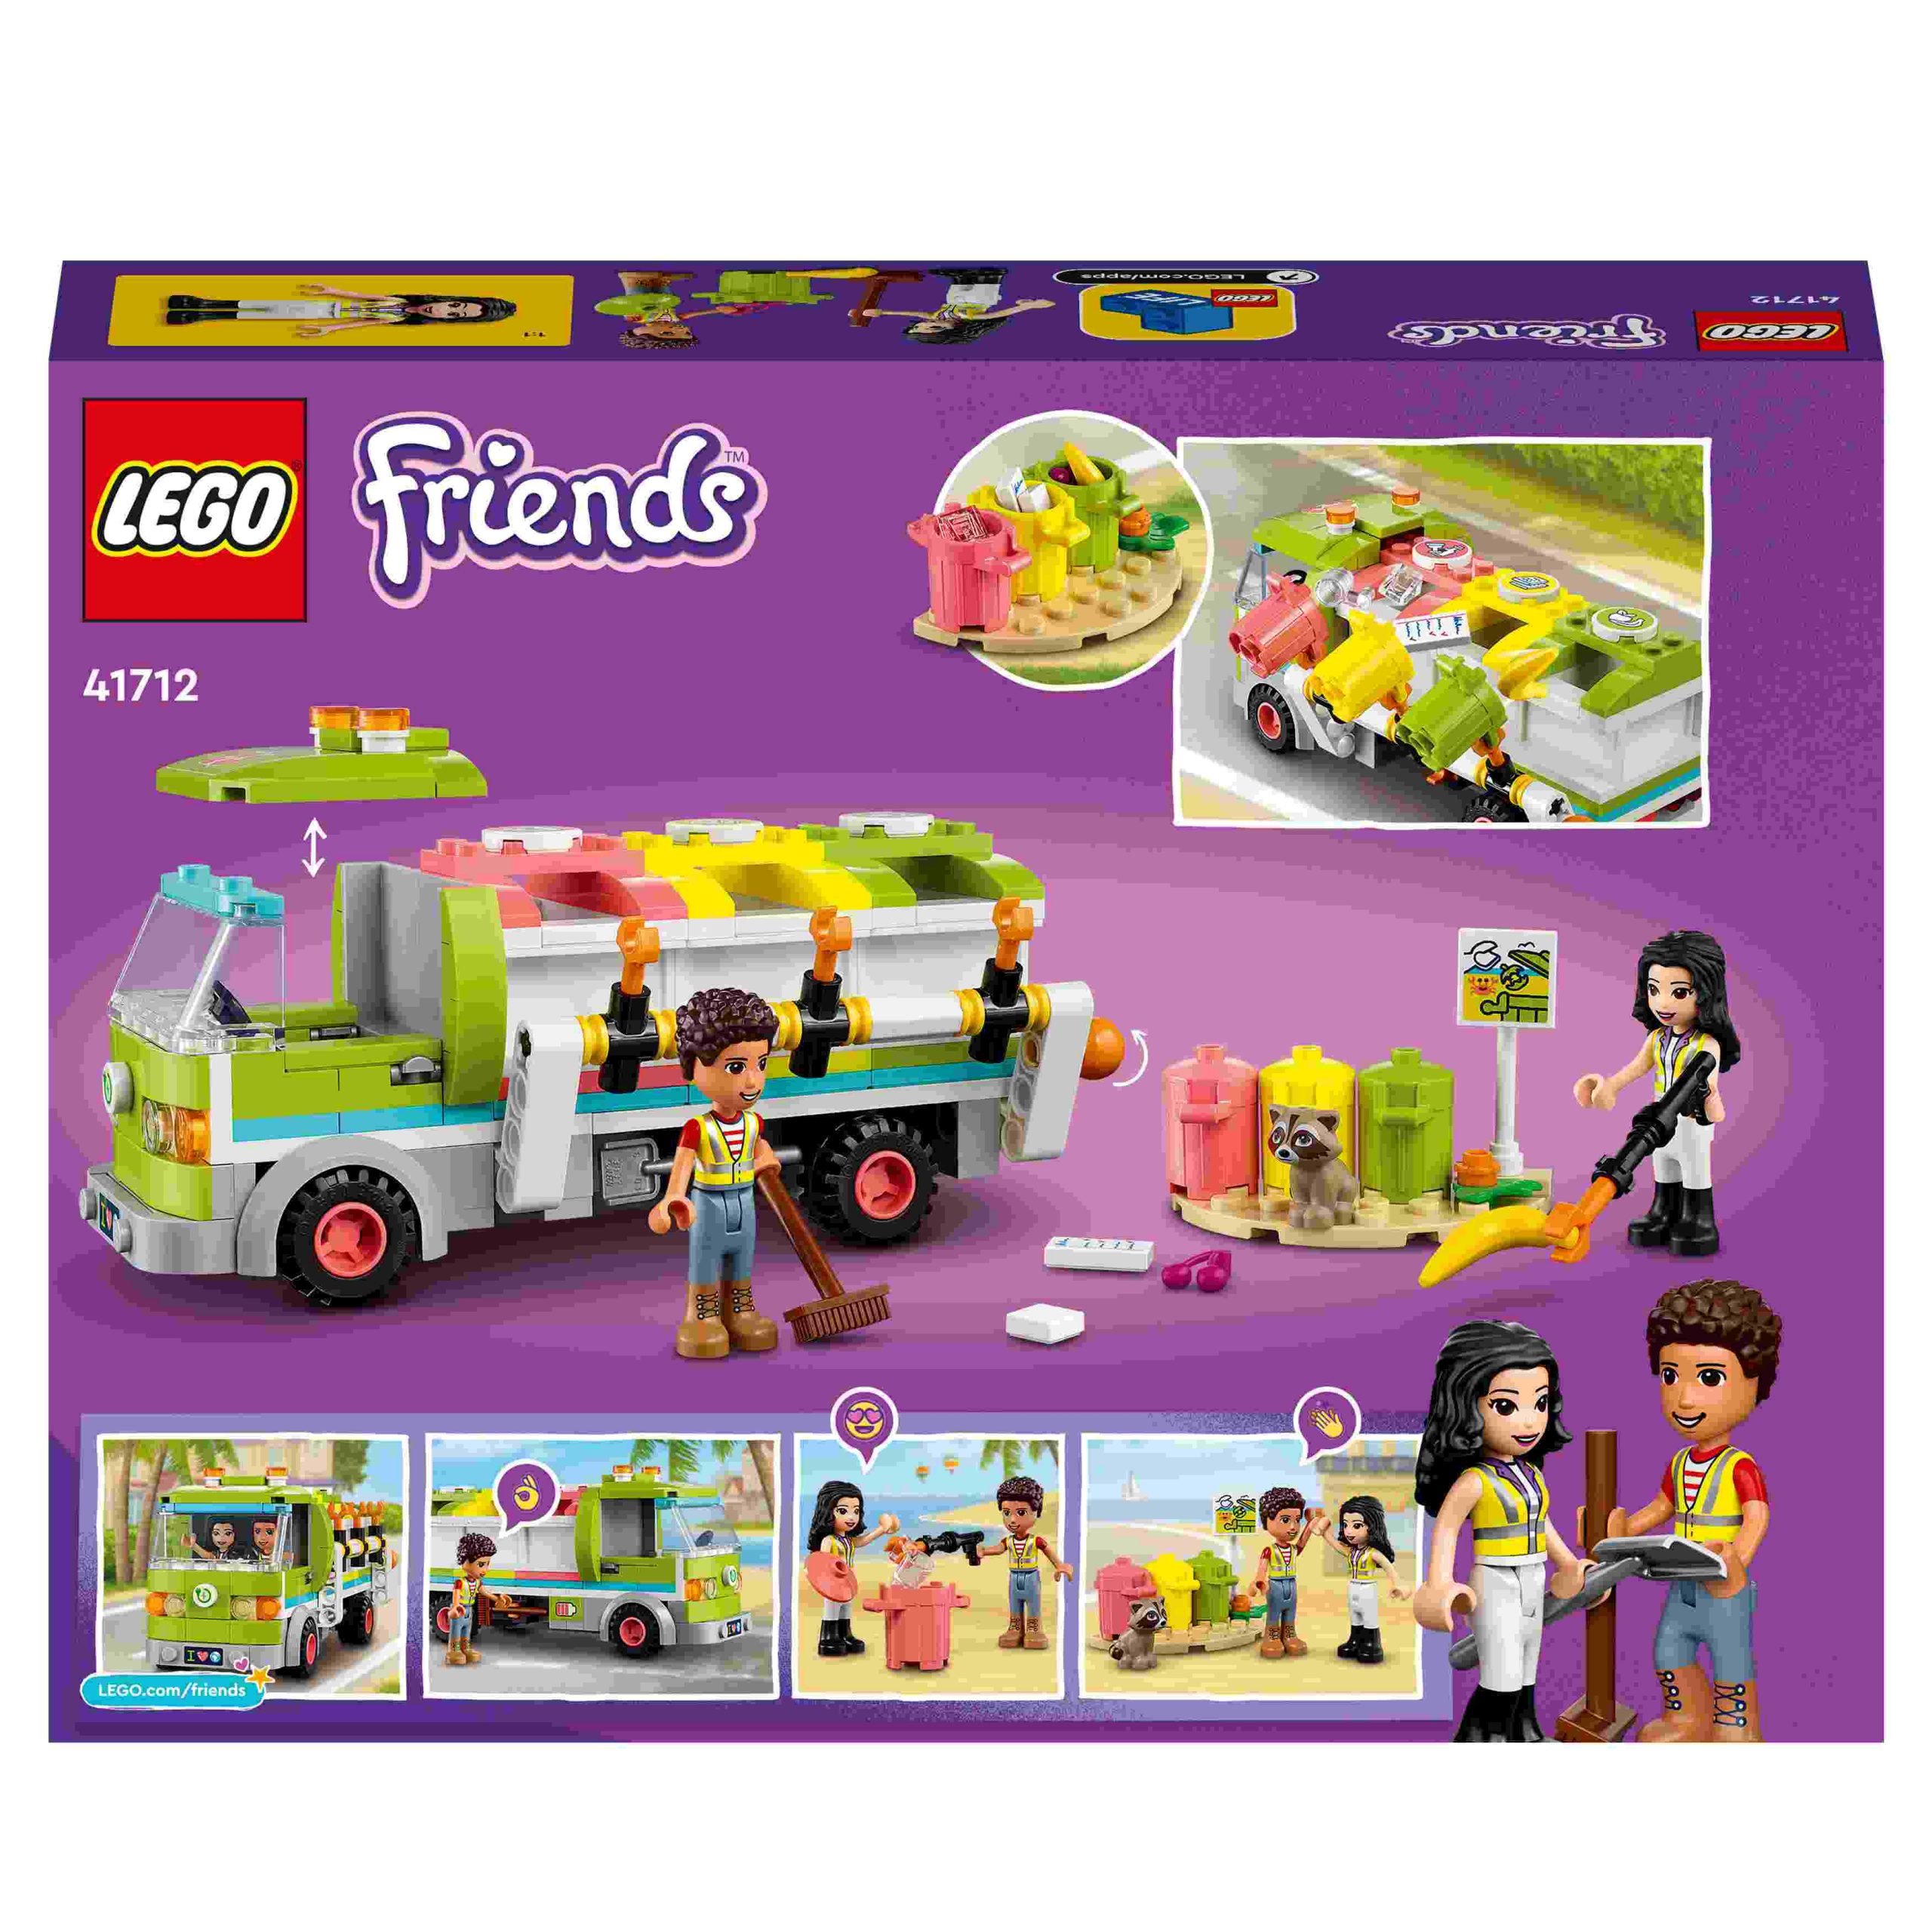 Lego friends 41712 camion riciclaggio rifiuti, mini bambolina emma, nettezza urbana giocattolo, giochi per bambini dai 6 anni - LEGO FRIENDS, Lego